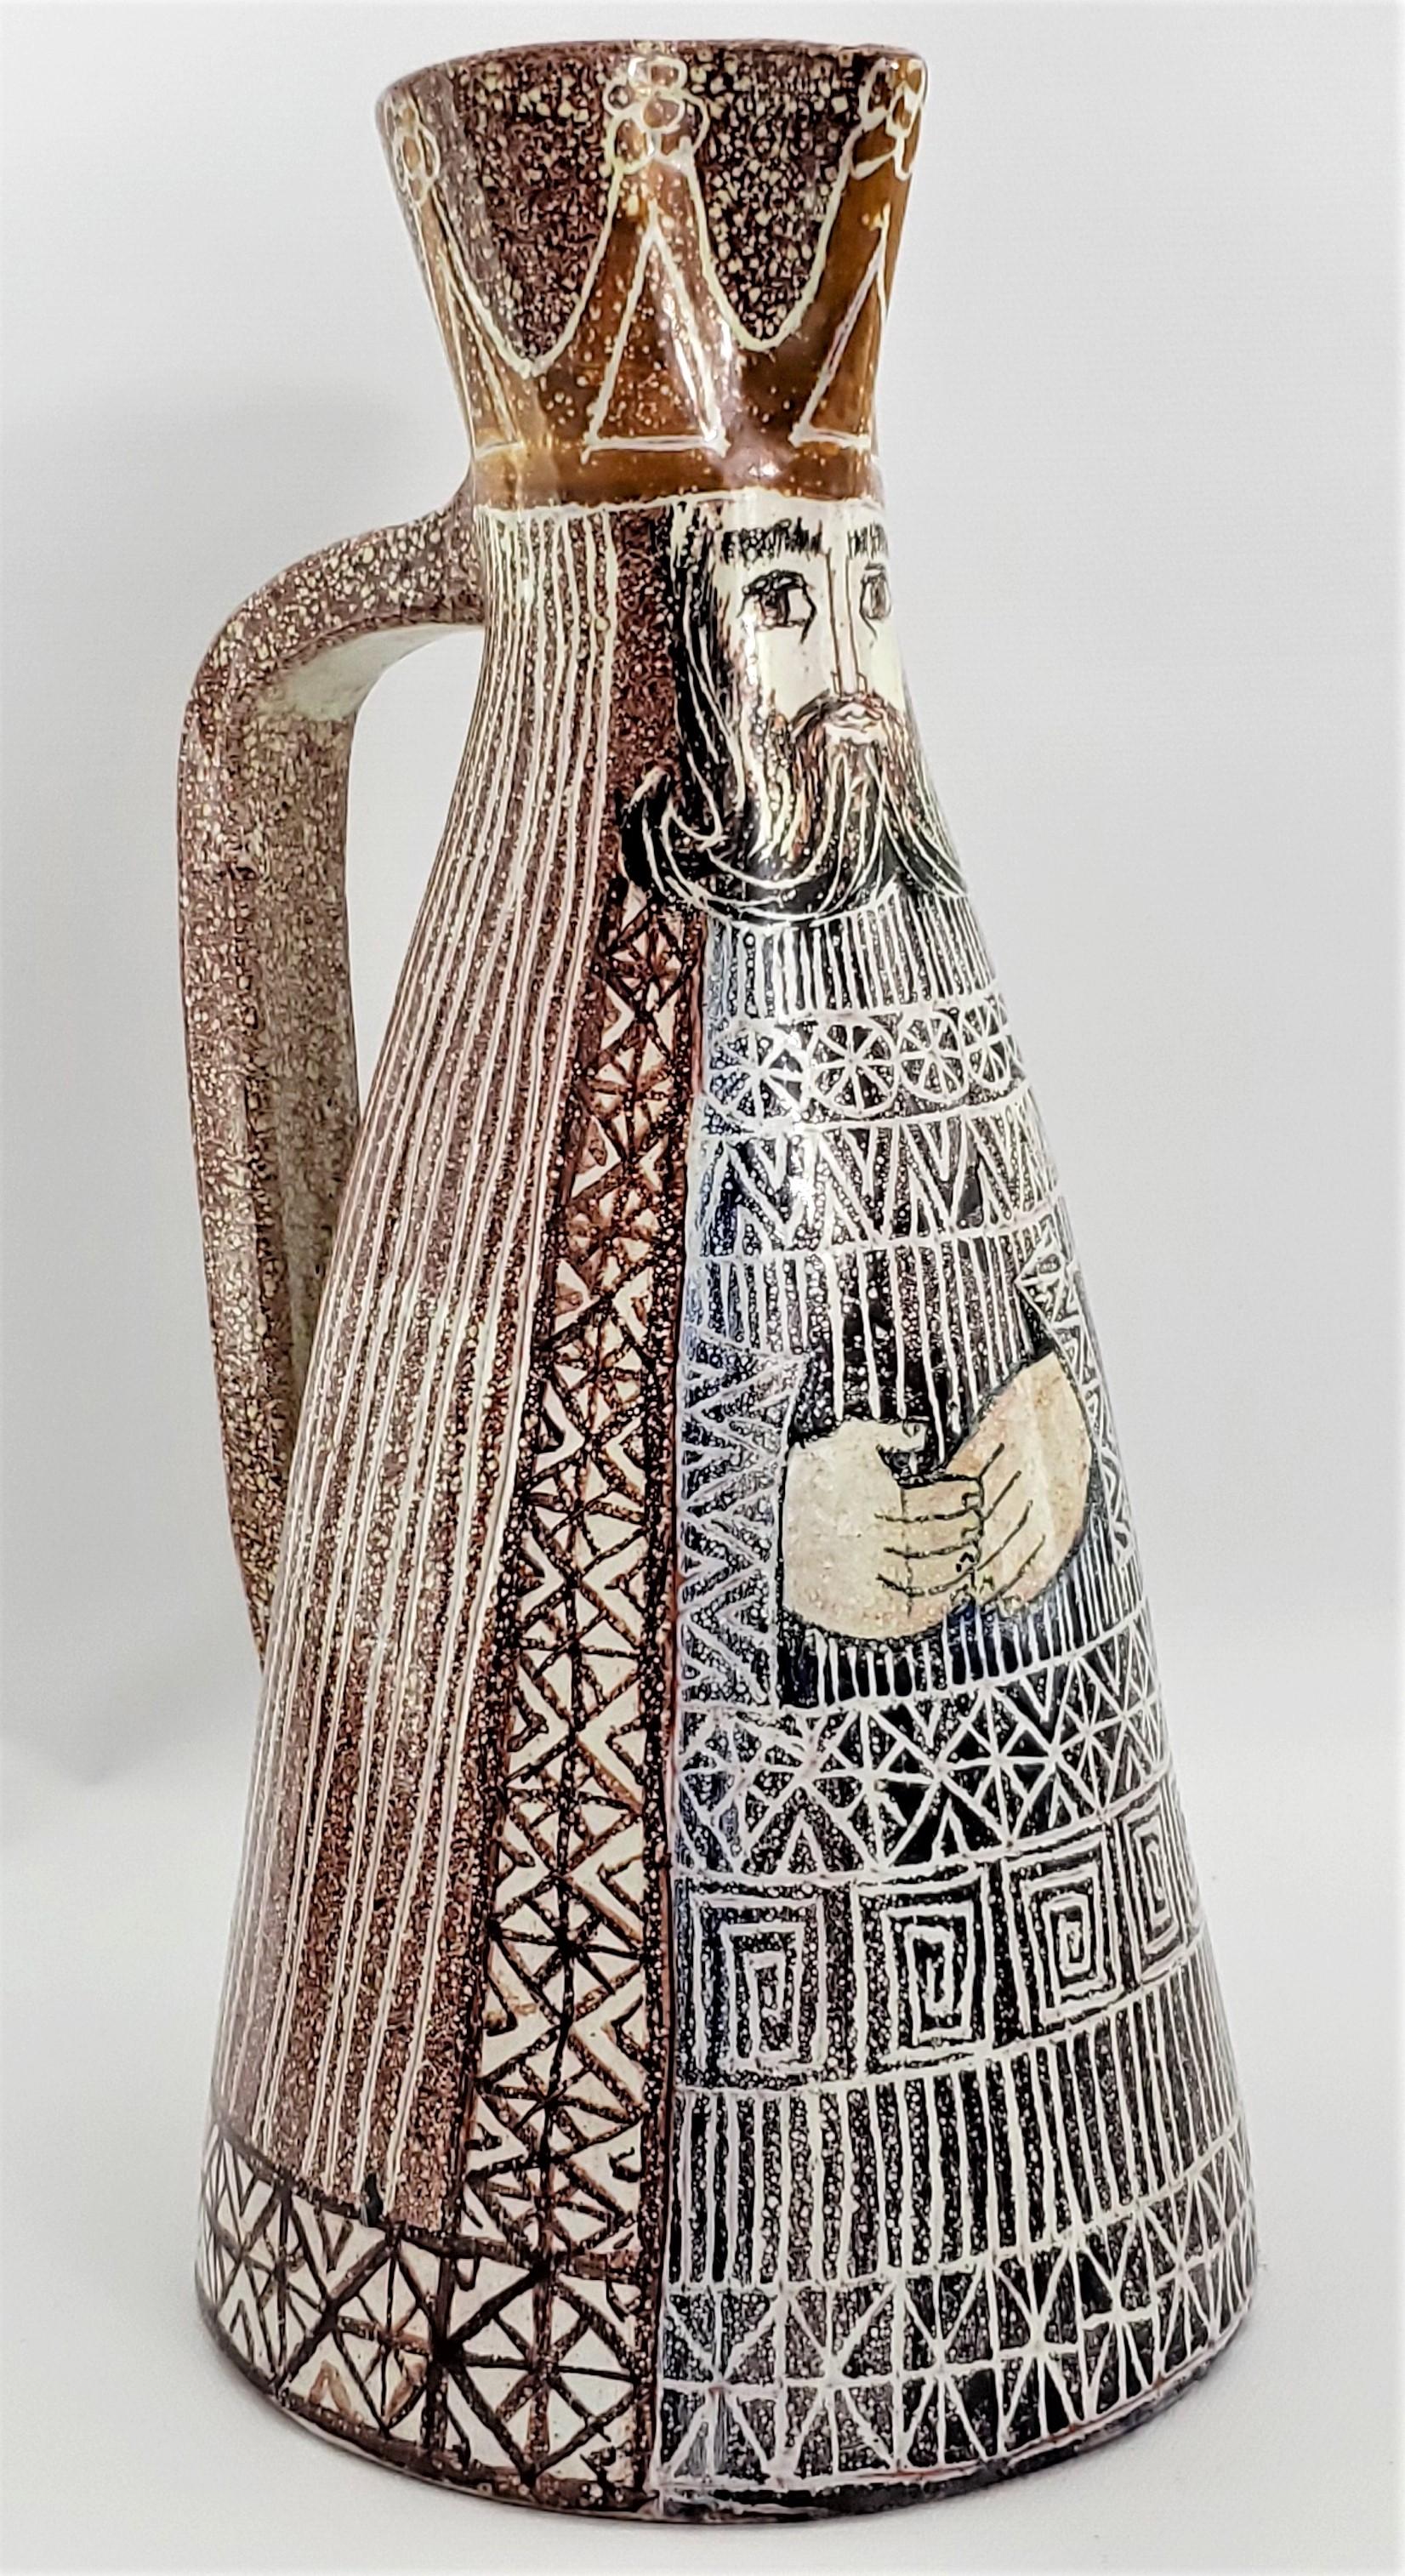 Bemerkenswerter dekorativer Krug von Alfaraz, entworfen von den bekannten spanischen Keramikkünstlern: Miguel DURAN-LORIGA und Jesus MARTITEGUI, ca. 1960er Jahre. Dieser Krug wurde nie benutzt und gilt als 